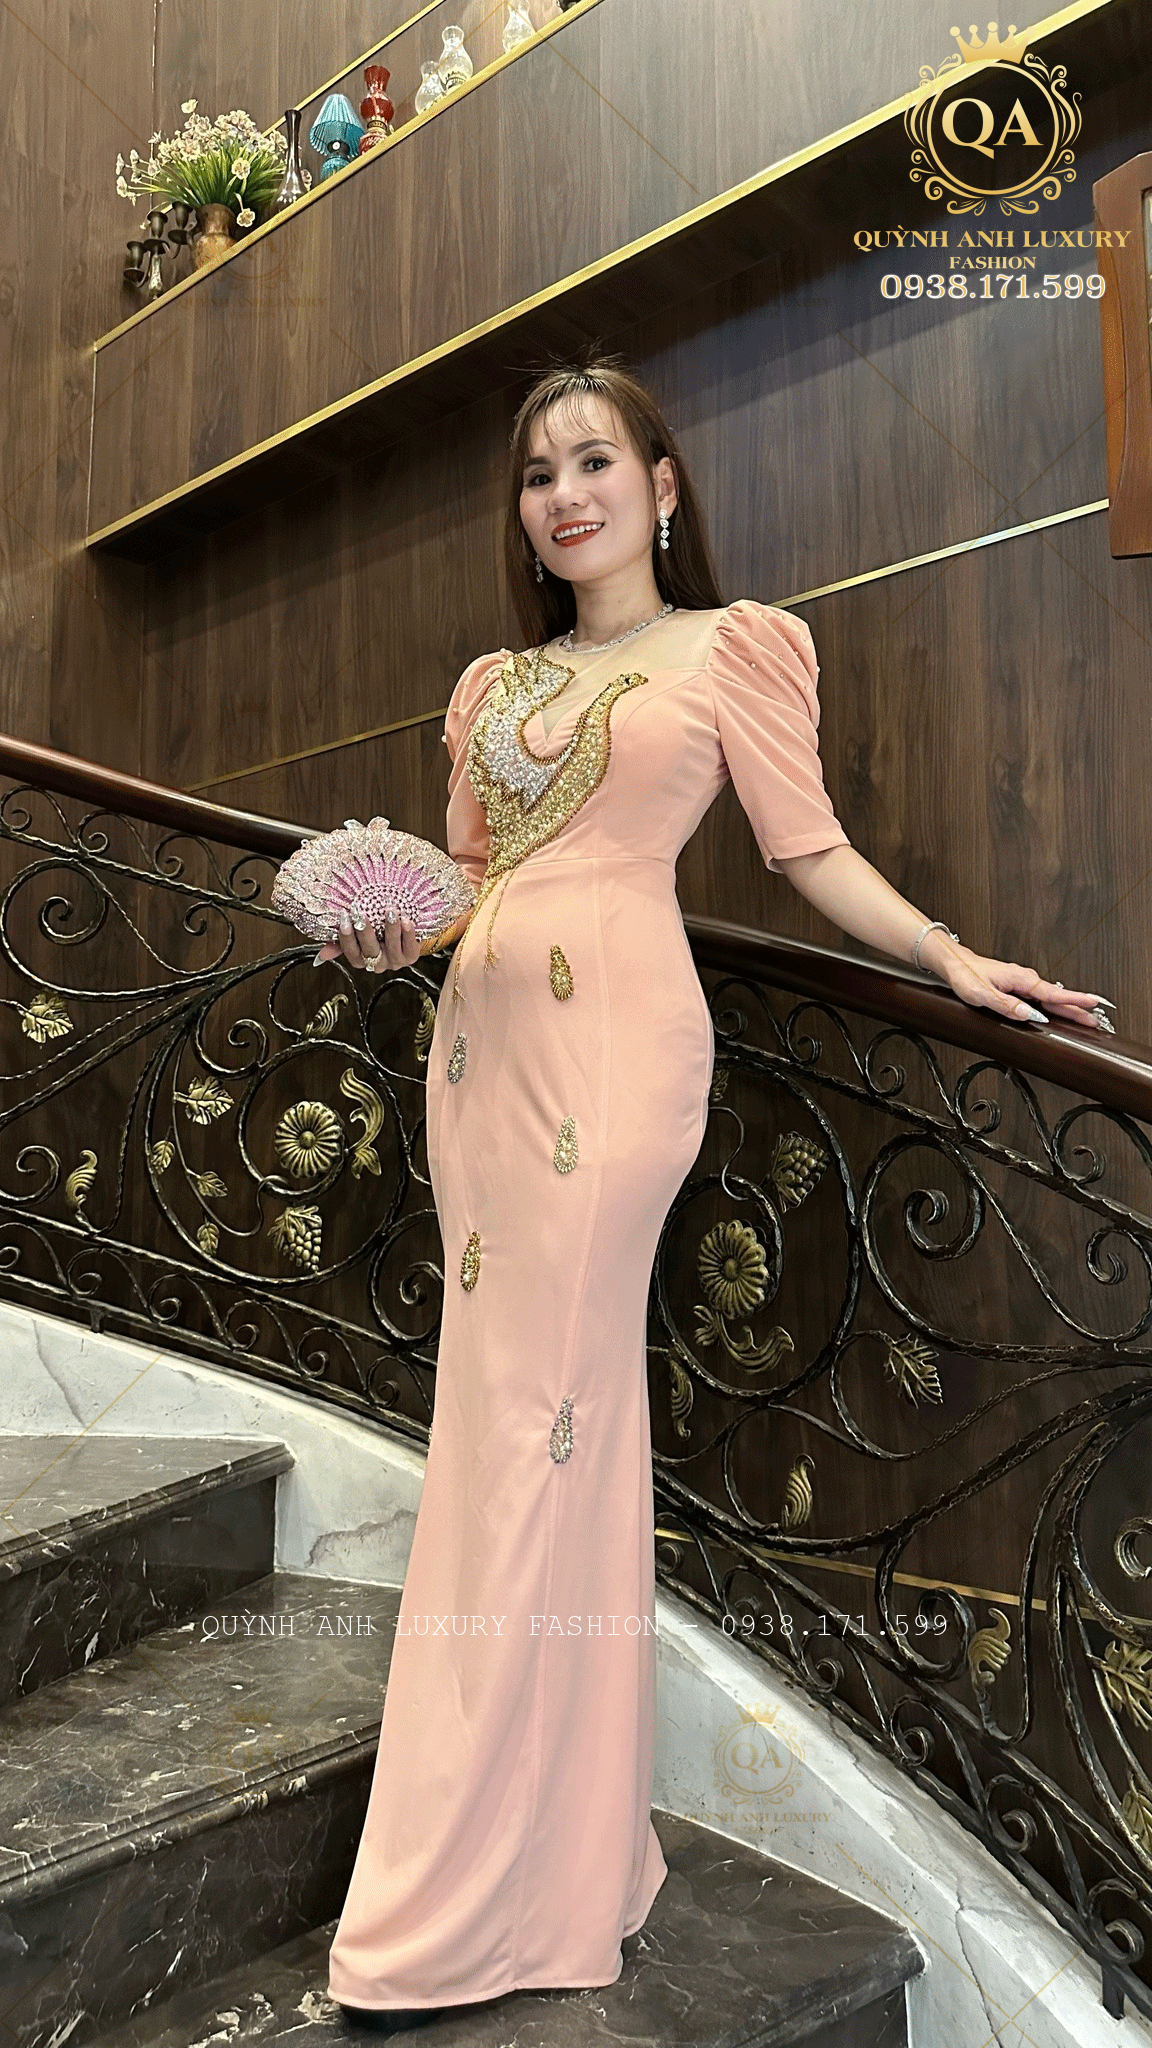 Kinh ngạc với bí mật đằng sau của đầm dạ hội trung niên Quỳnh Anh Luxury Fashion